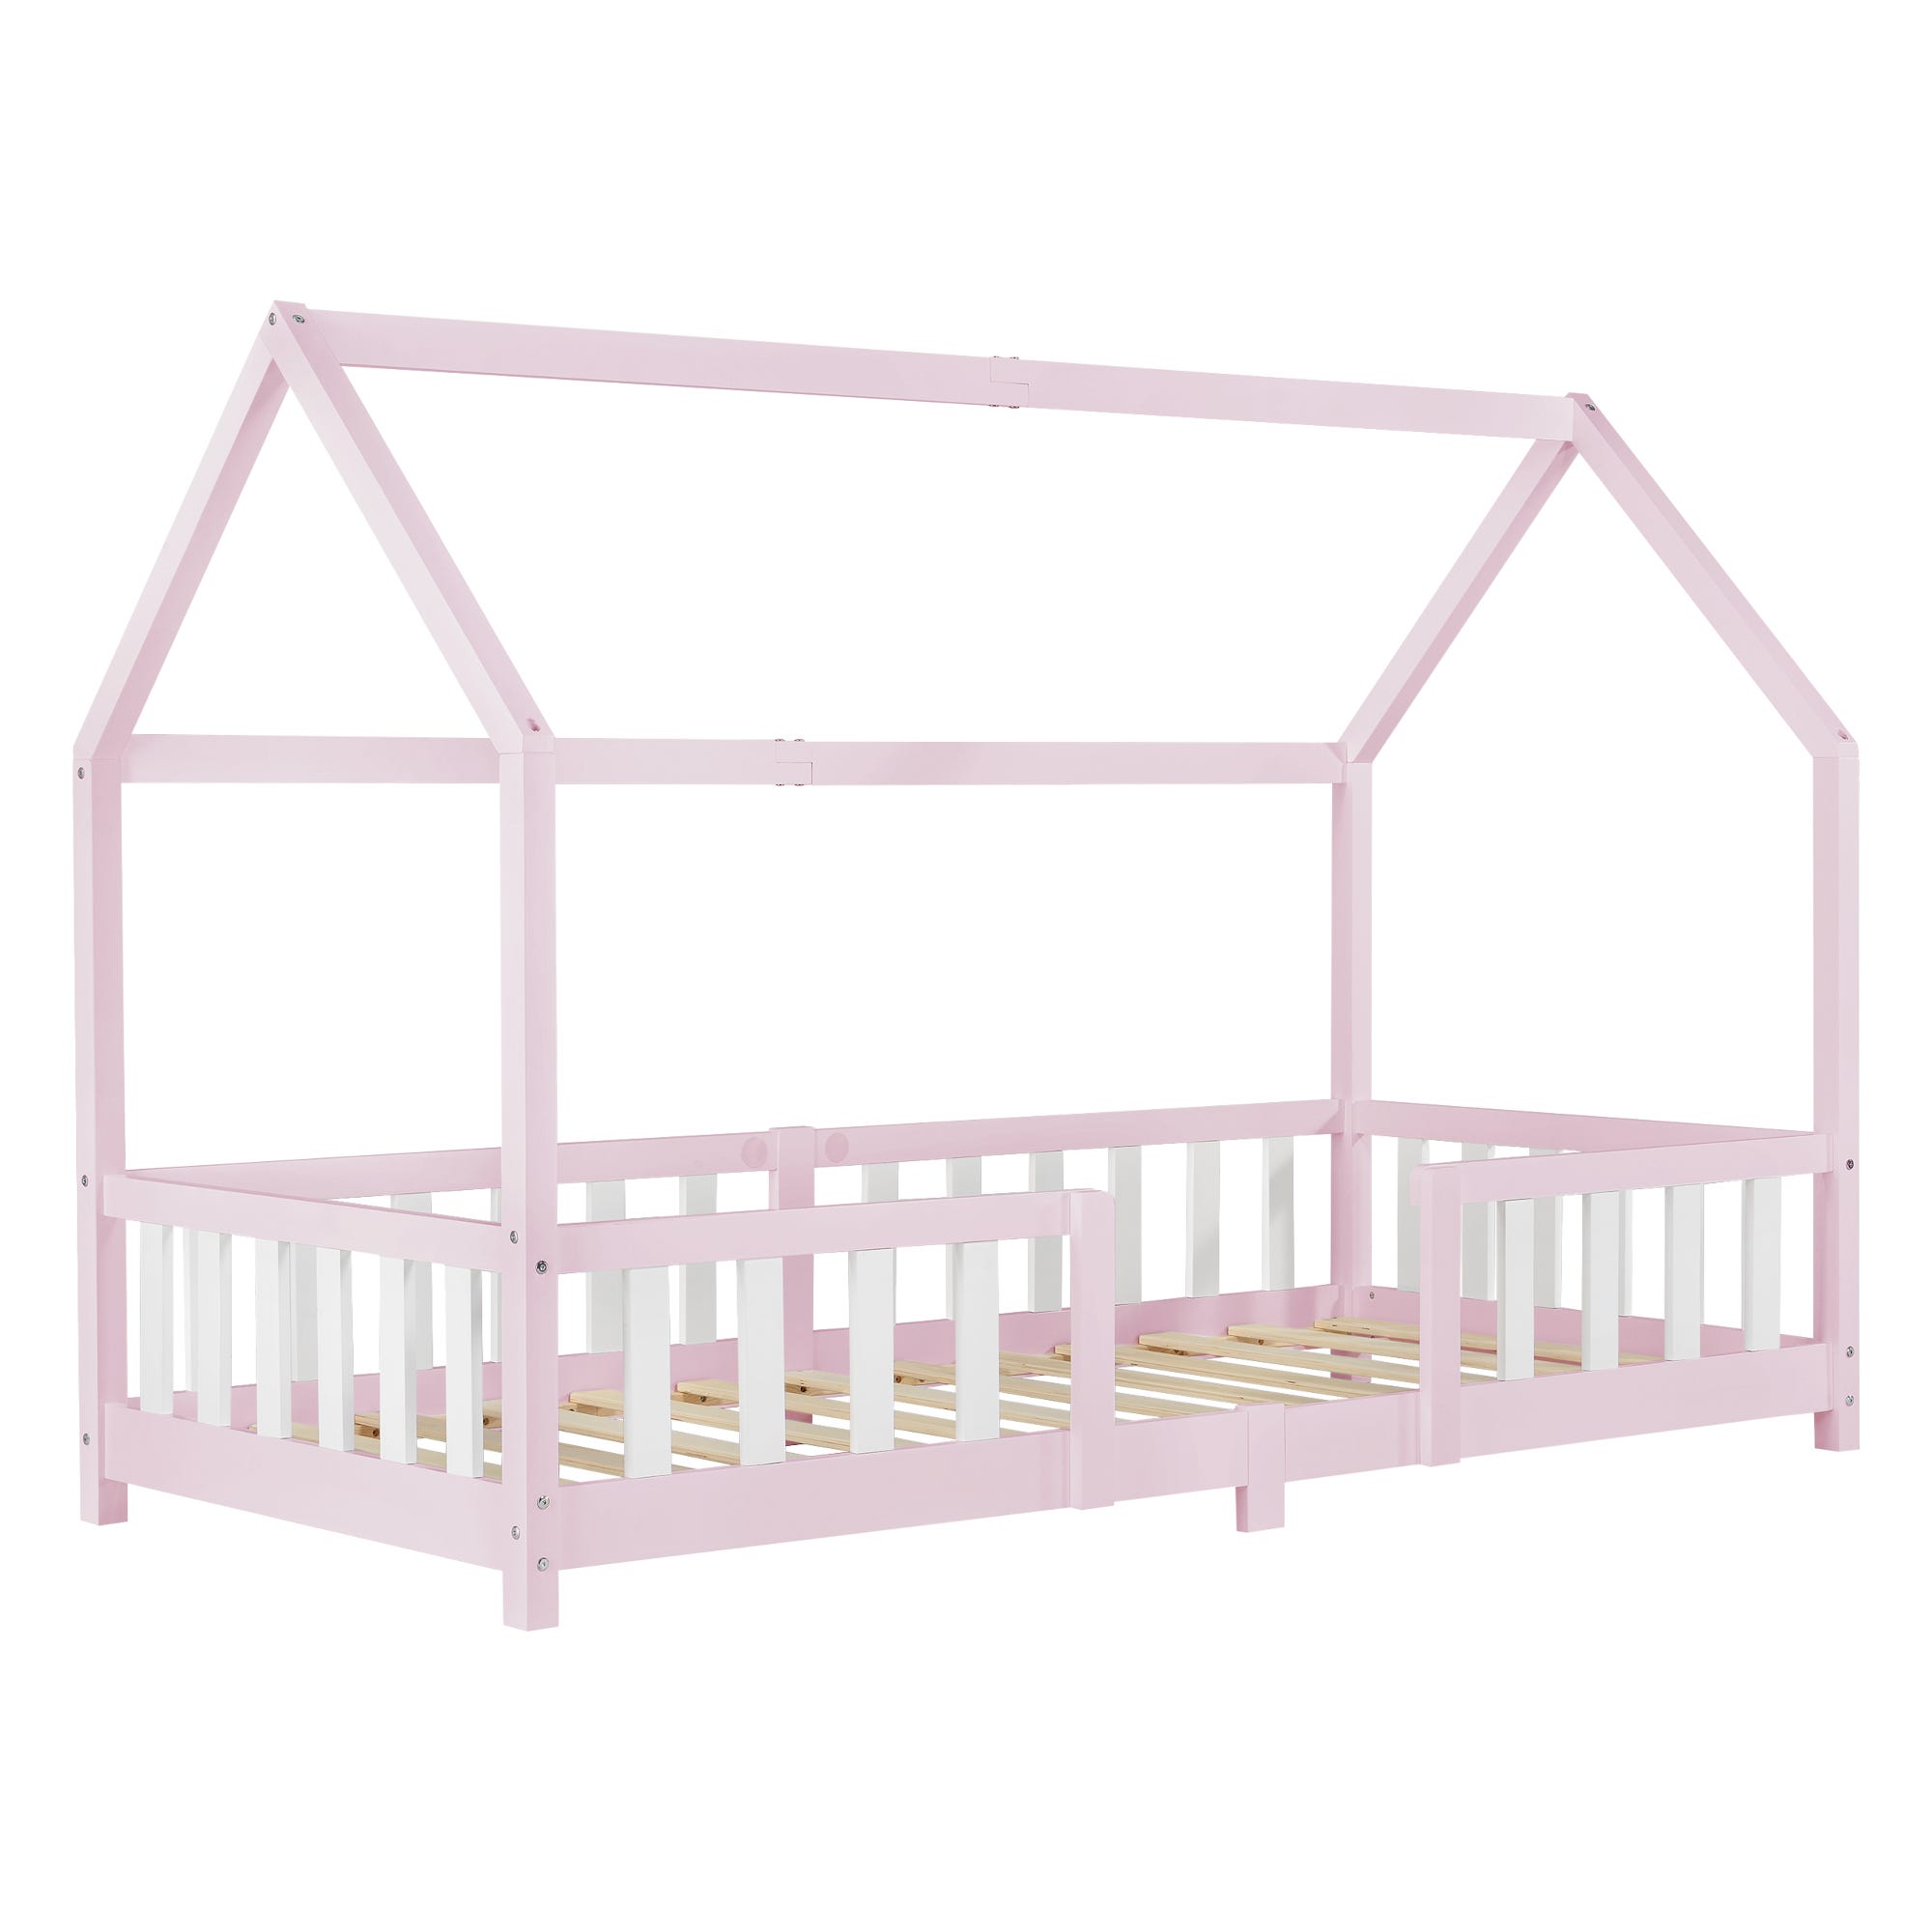 Cama para niños de Pino Vardø - 90 x 200 cm - Cama Infantil - Forma de Casa  - Cama Simple - Cama Individual - Rosa lacado mate [en.casa]®